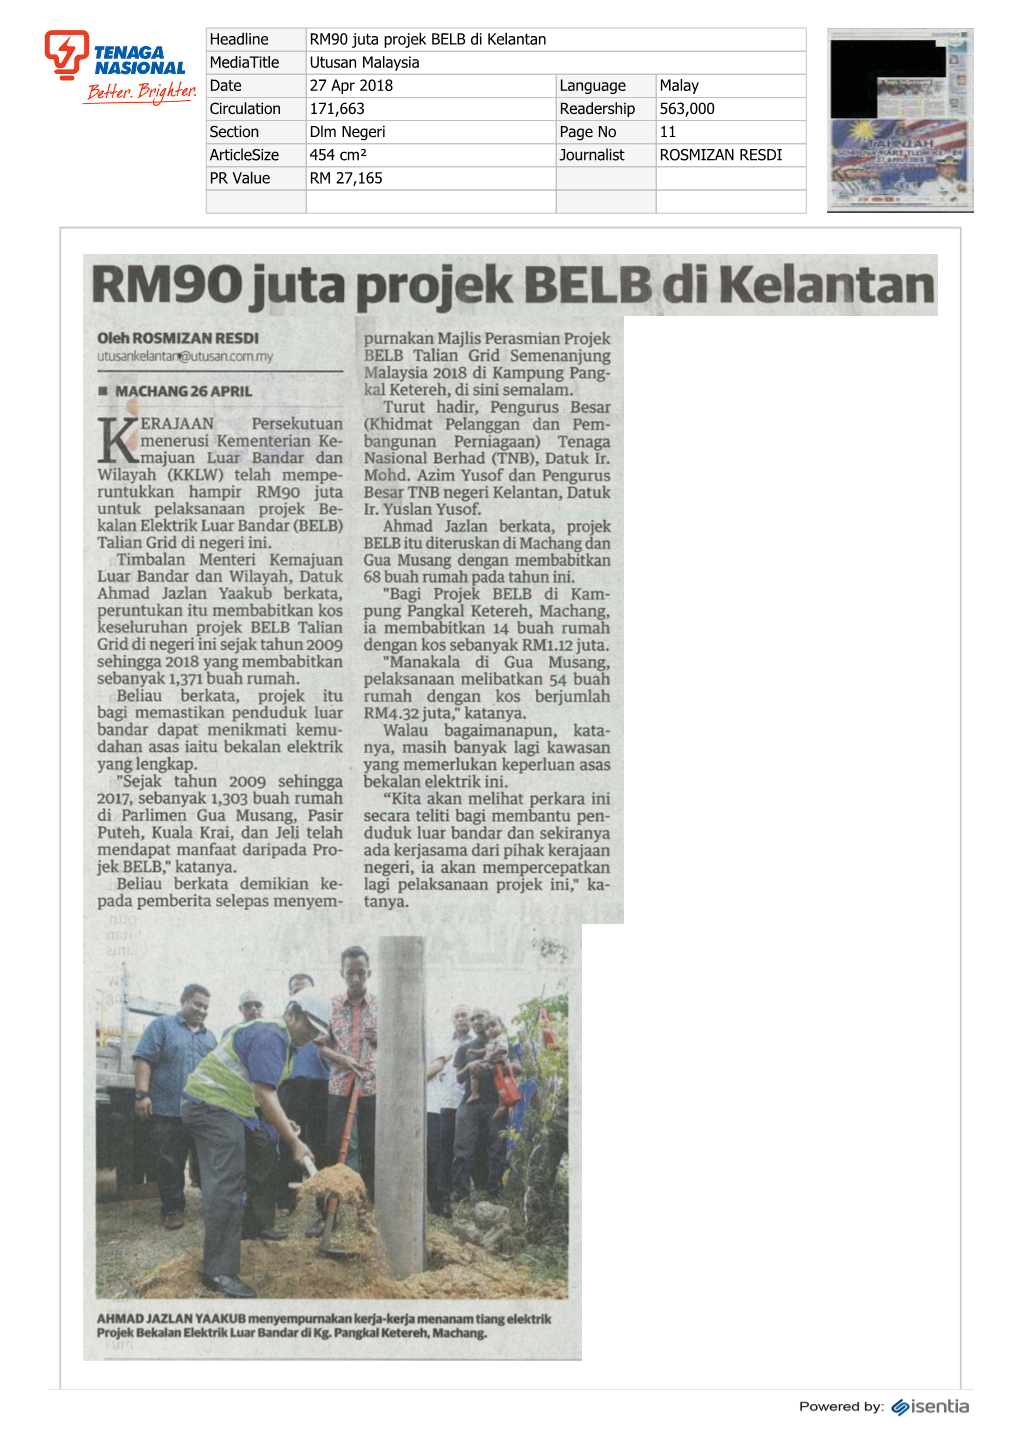 RM90 Juta Projek BELB Di Kelantan